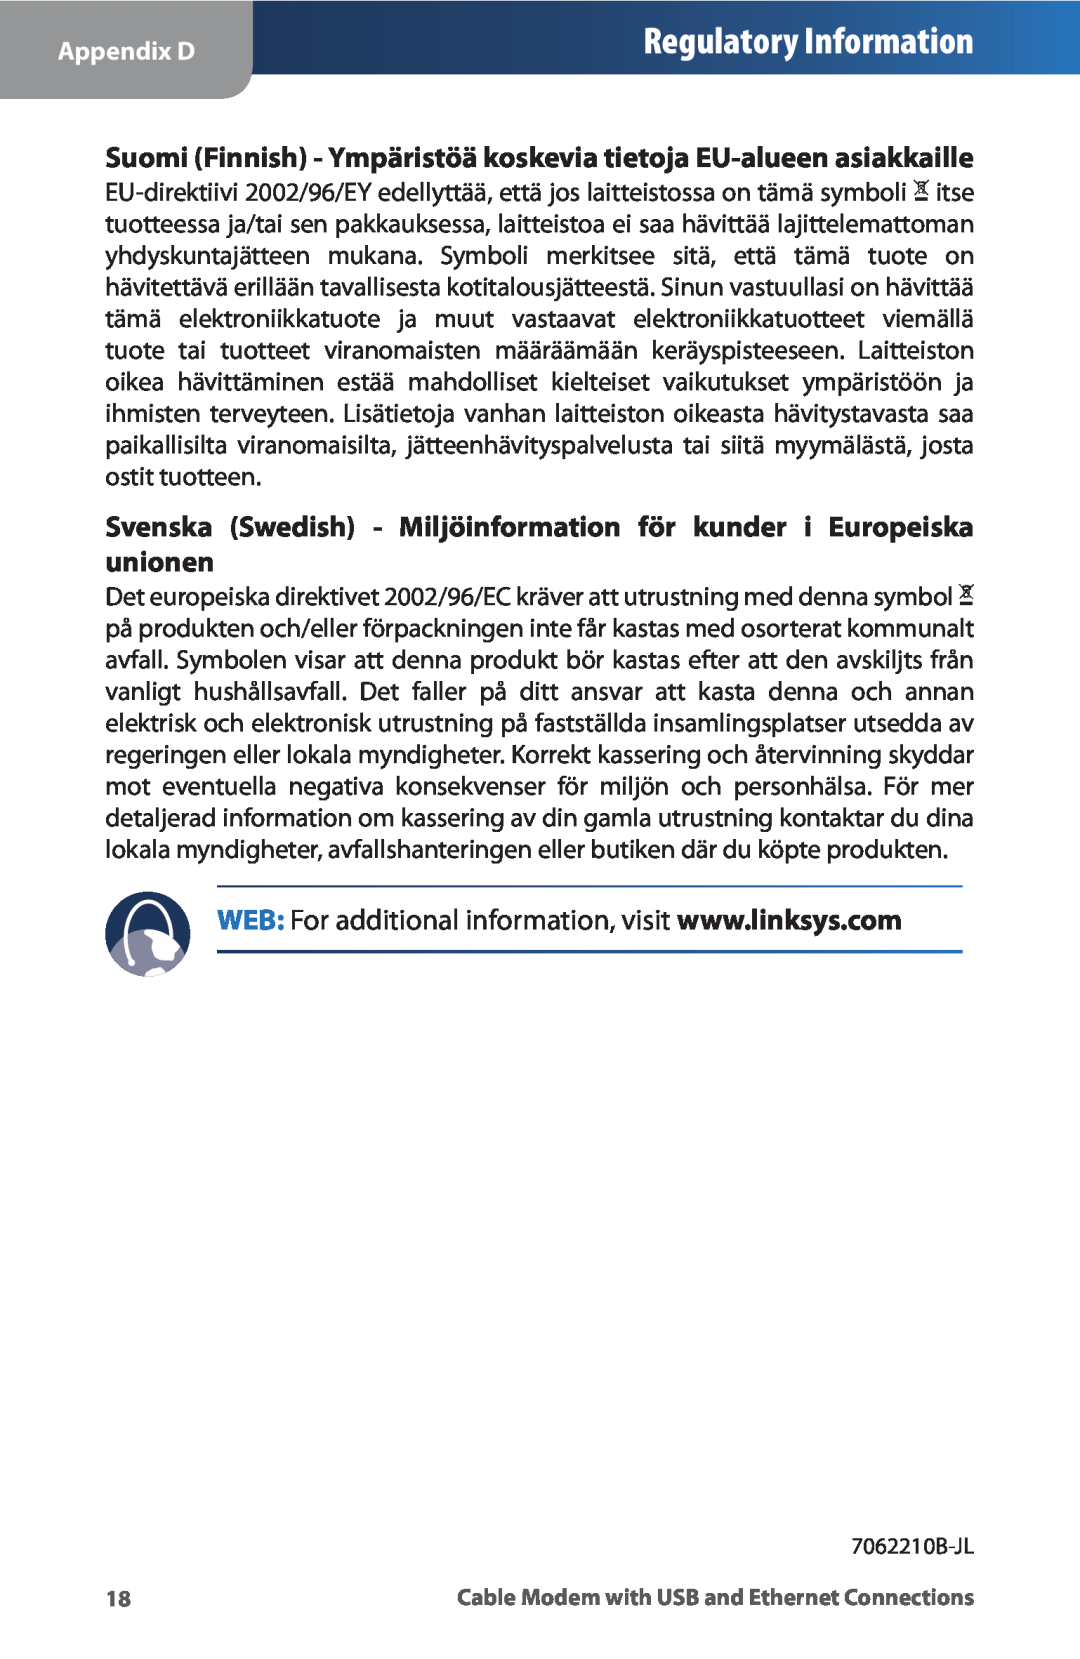 Linksys CM100 manual Regulatory Information, Suomi Finnish - Ympäristöä koskevia tietoja EU-alueen asiakkaille, Appendix D 